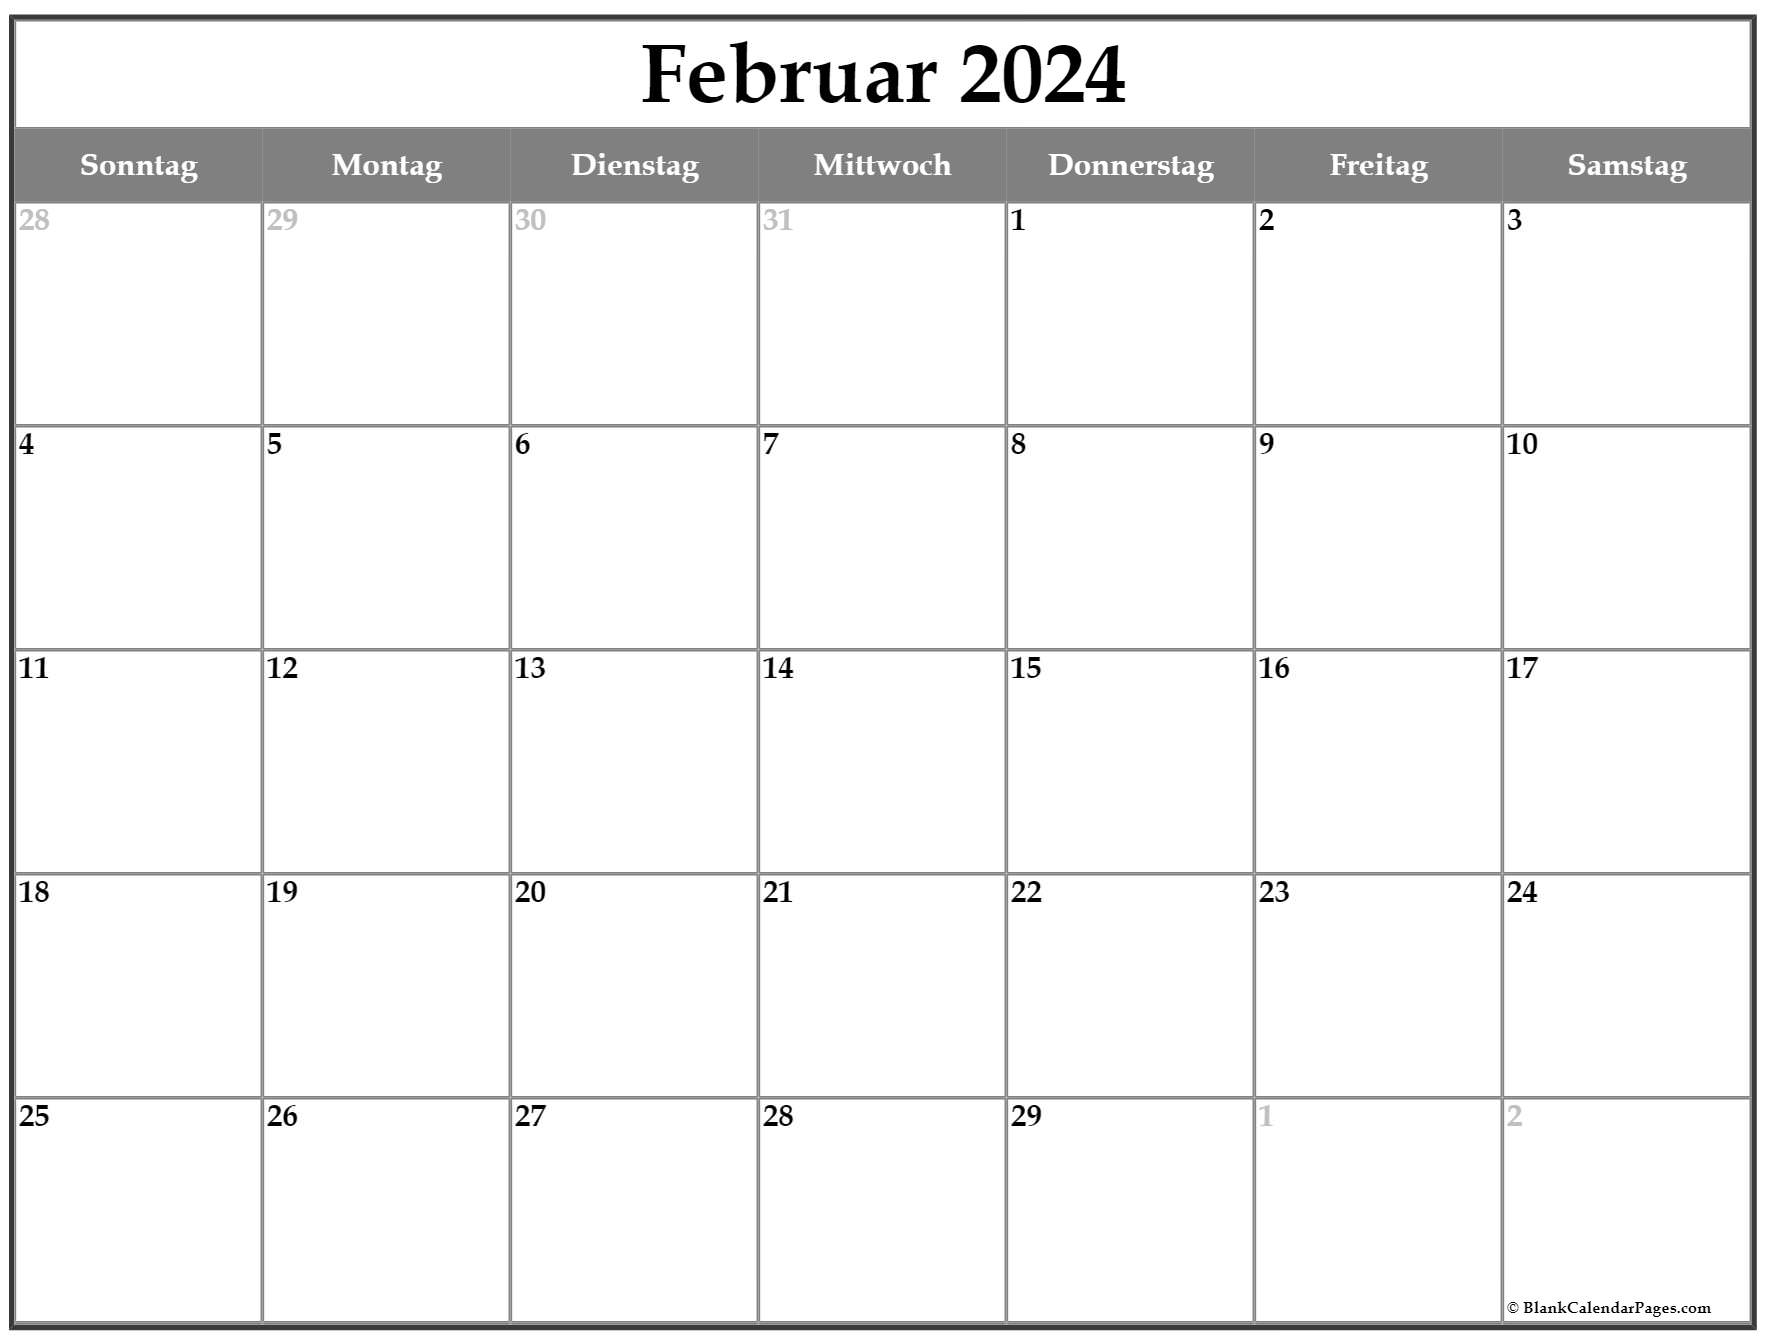  Februar 2022  kalender auf Deutsch kalender 2022 